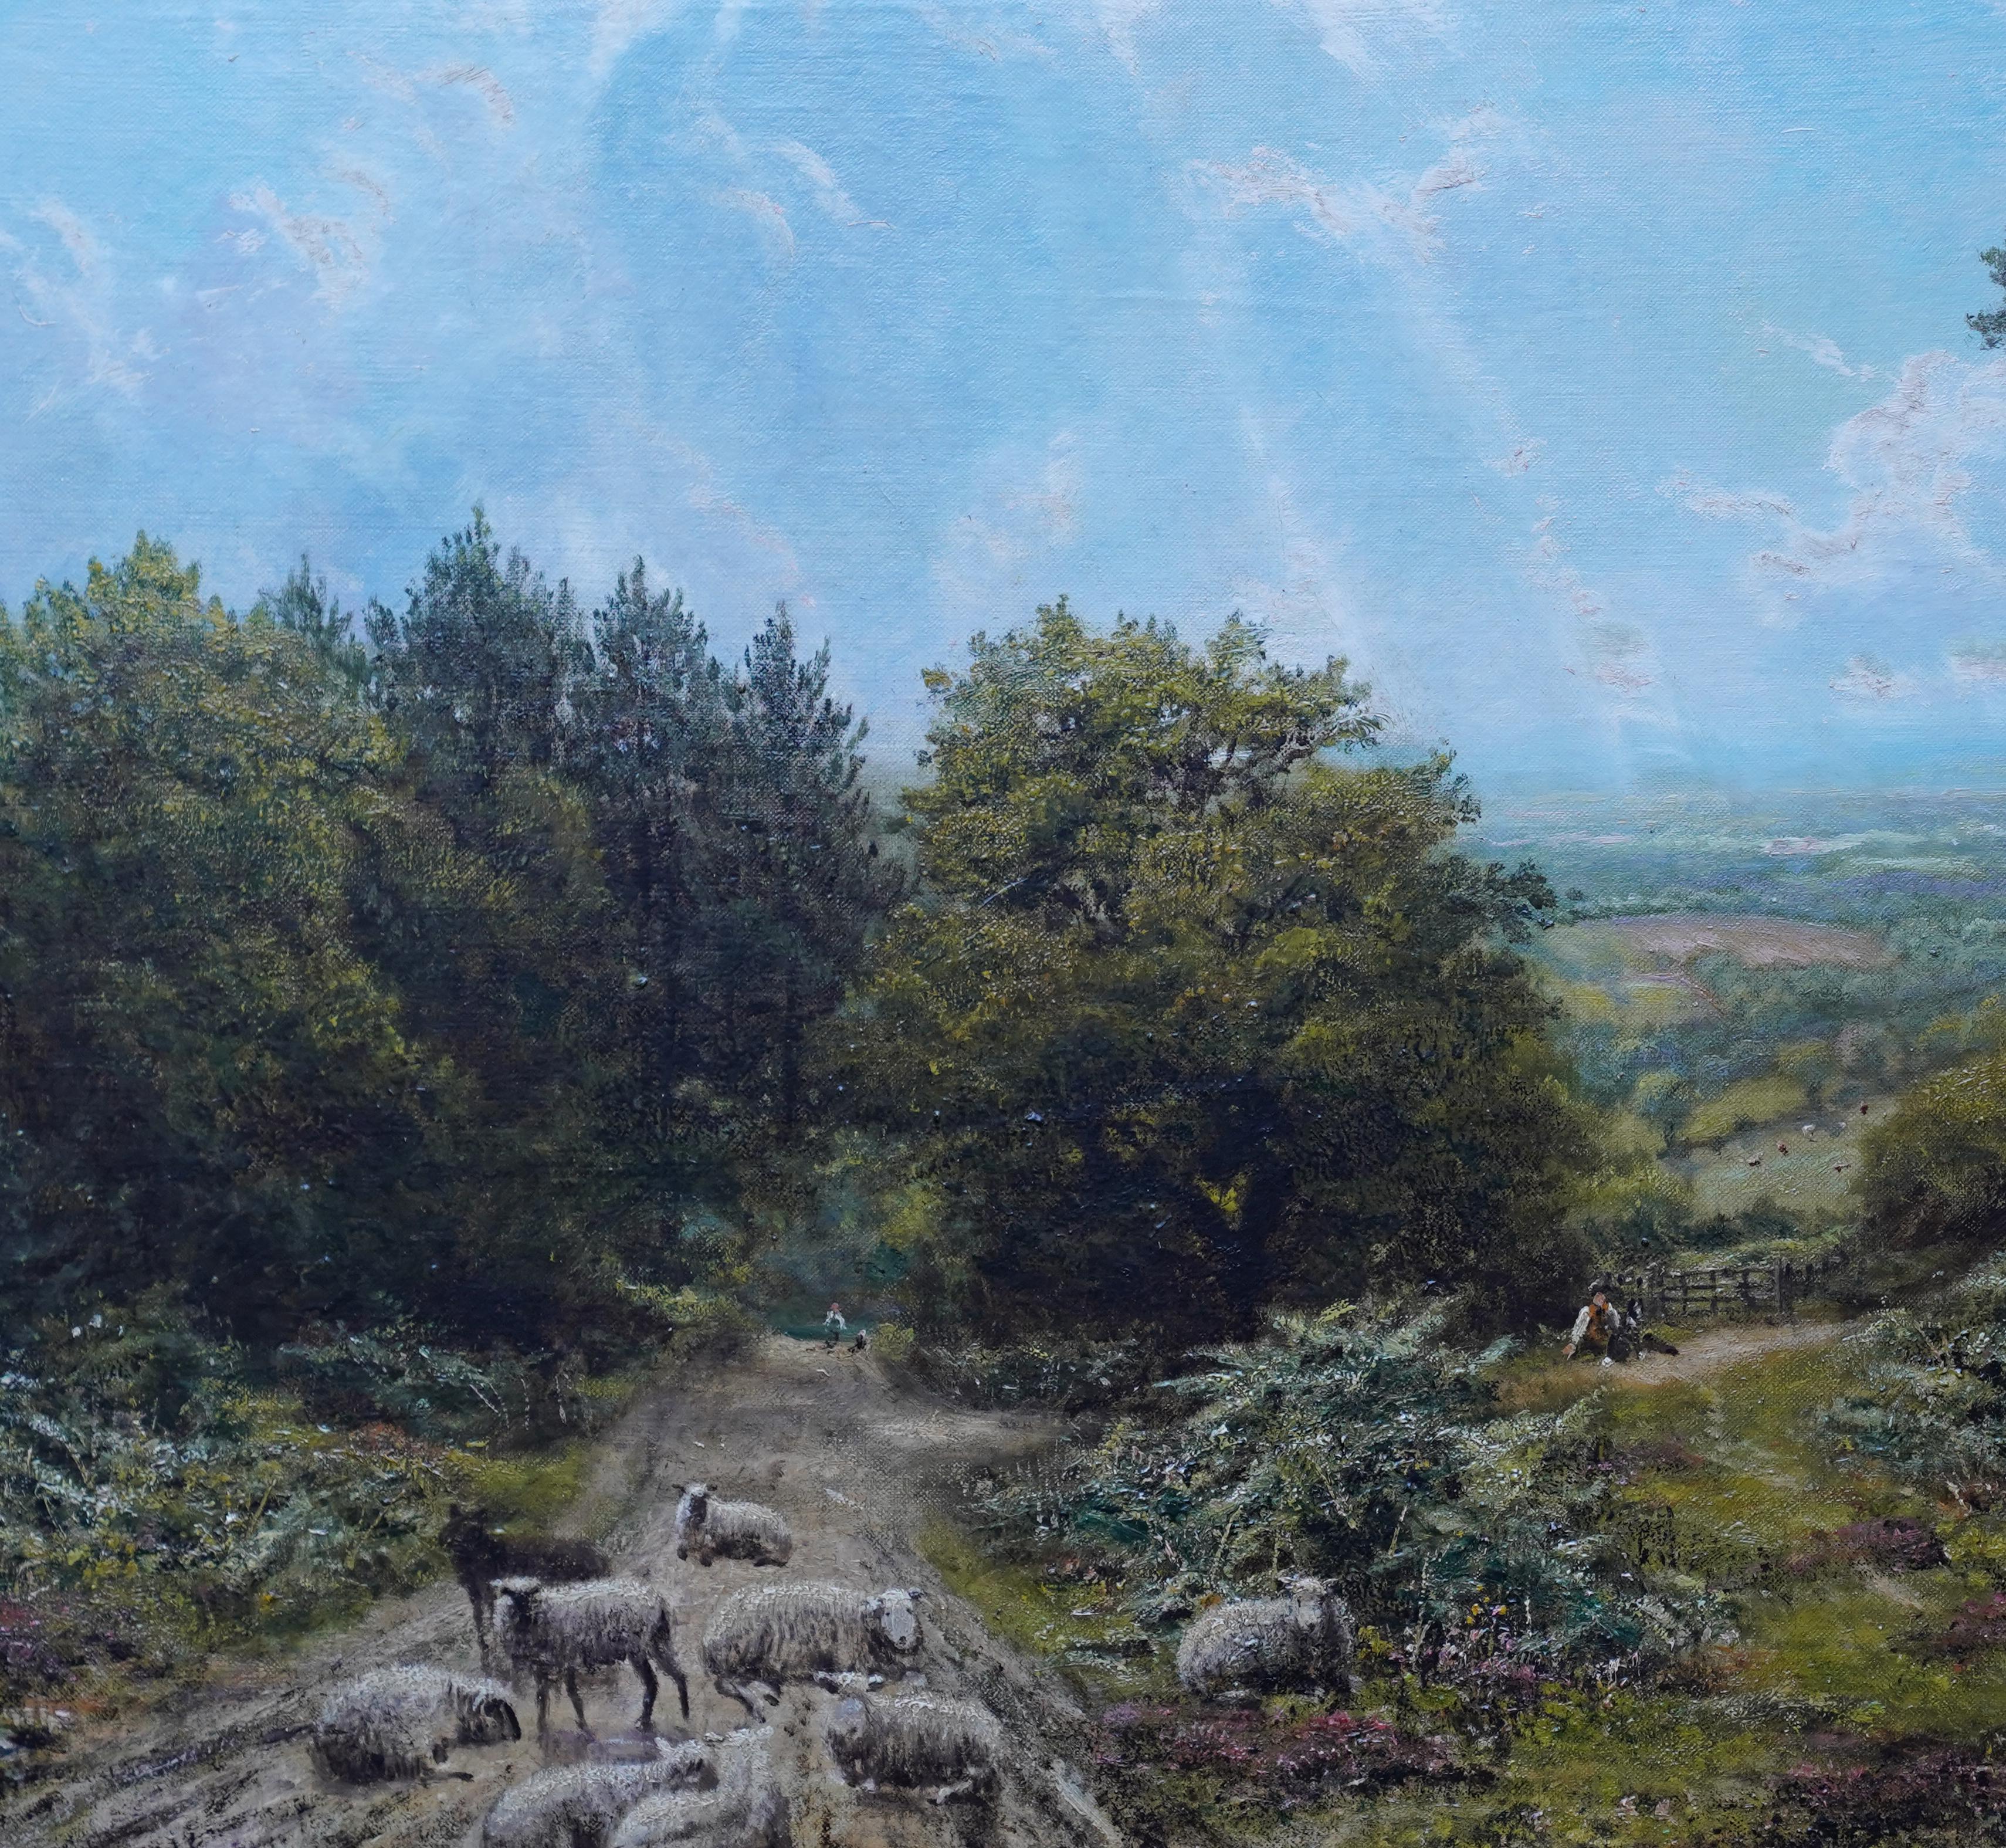 Cette belle peinture à l'huile d'un paysage du Surrey est l'œuvre du célèbre artiste britannique George William Mote. Peinte vers 1870, la composition est un paysage avec une vue imprenable au loin sur la droite. Au premier plan, un groupe de